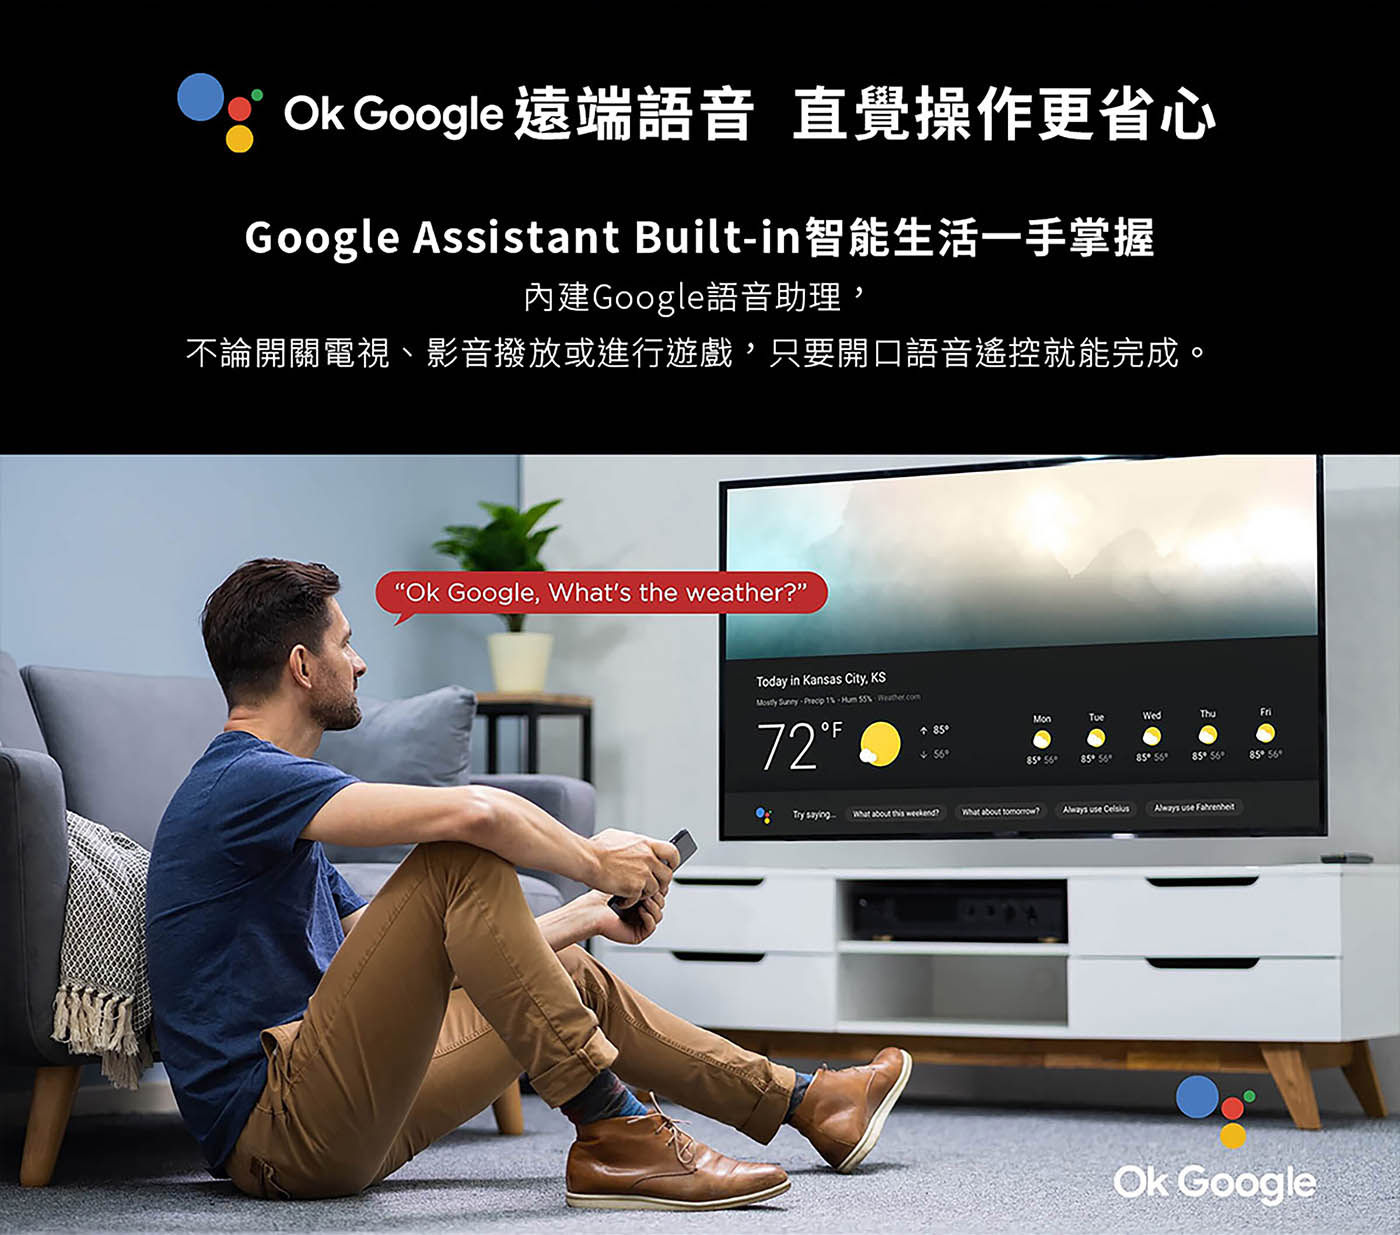 TCL 50吋 4K UHD Google TV 電視Google遠端語音直覺操作更省心，智能生活一手掌握